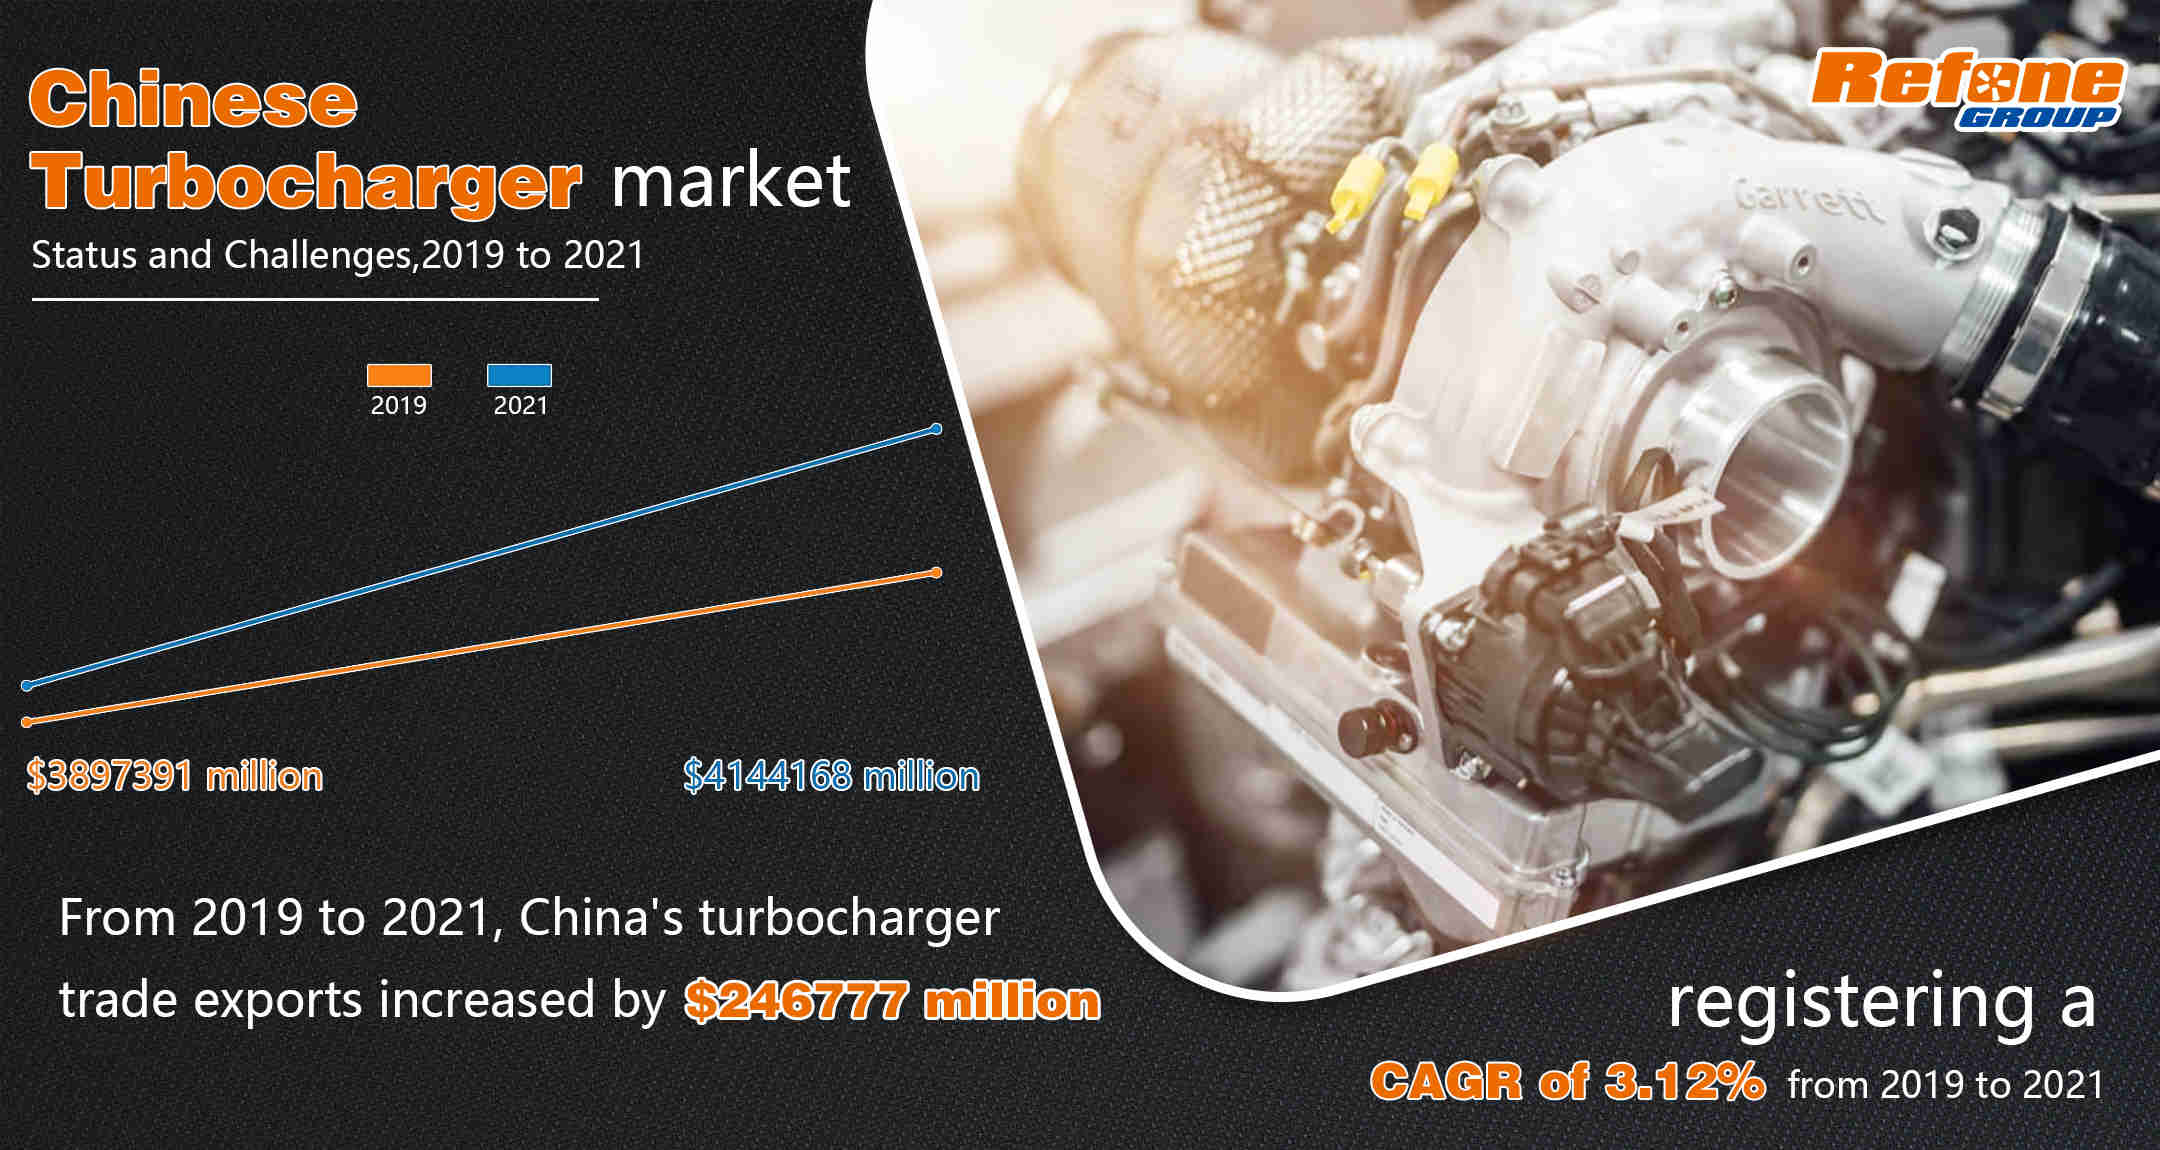 حالة وتحديات سوق توريد الشاحن التوربيني الصيني تحت تأثير COVID-1